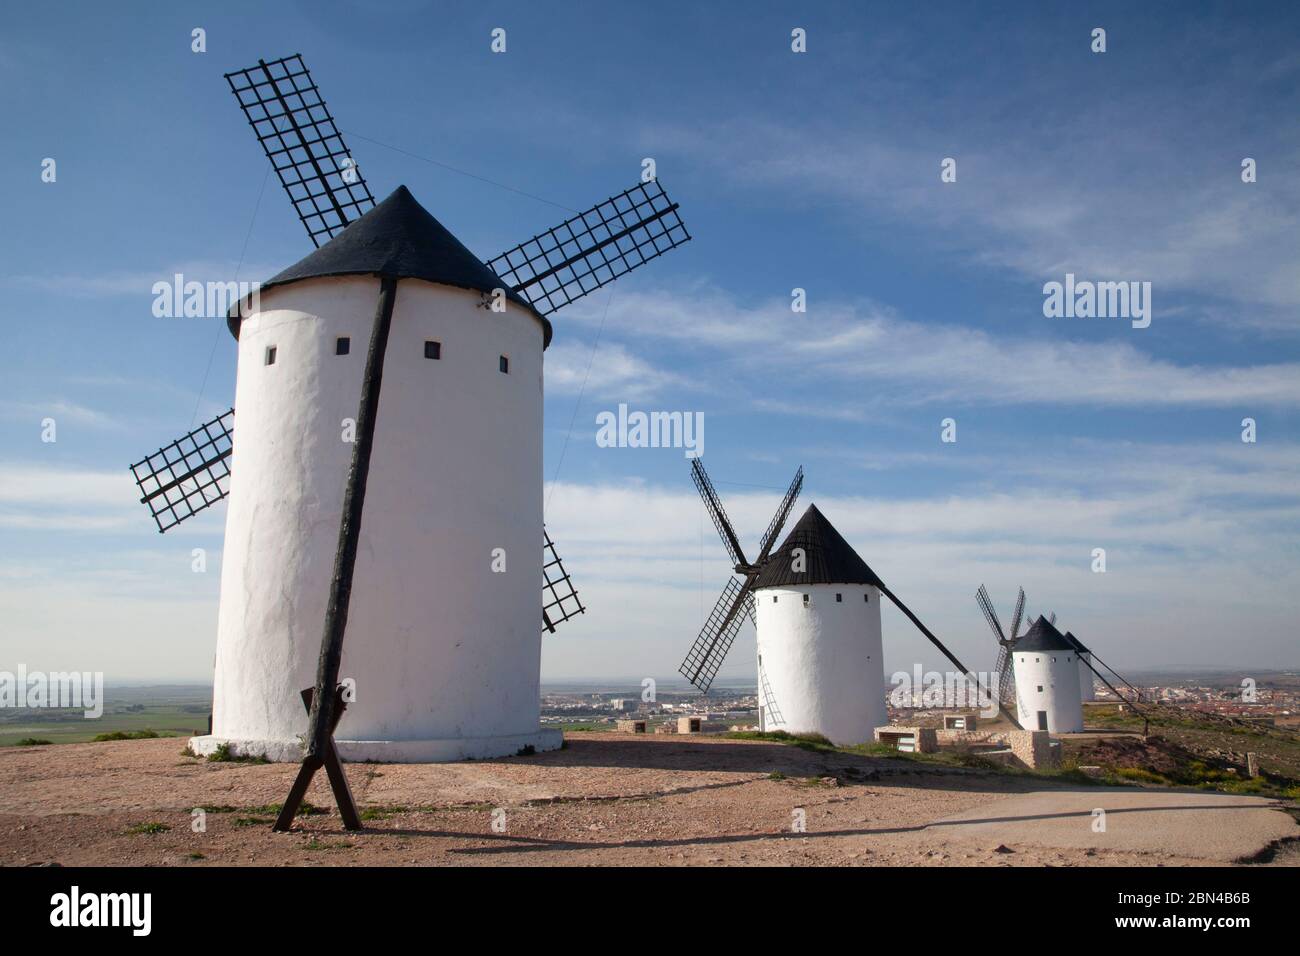 Windmills of Alcázar de San Juan in Ciudad Real Stock Photo